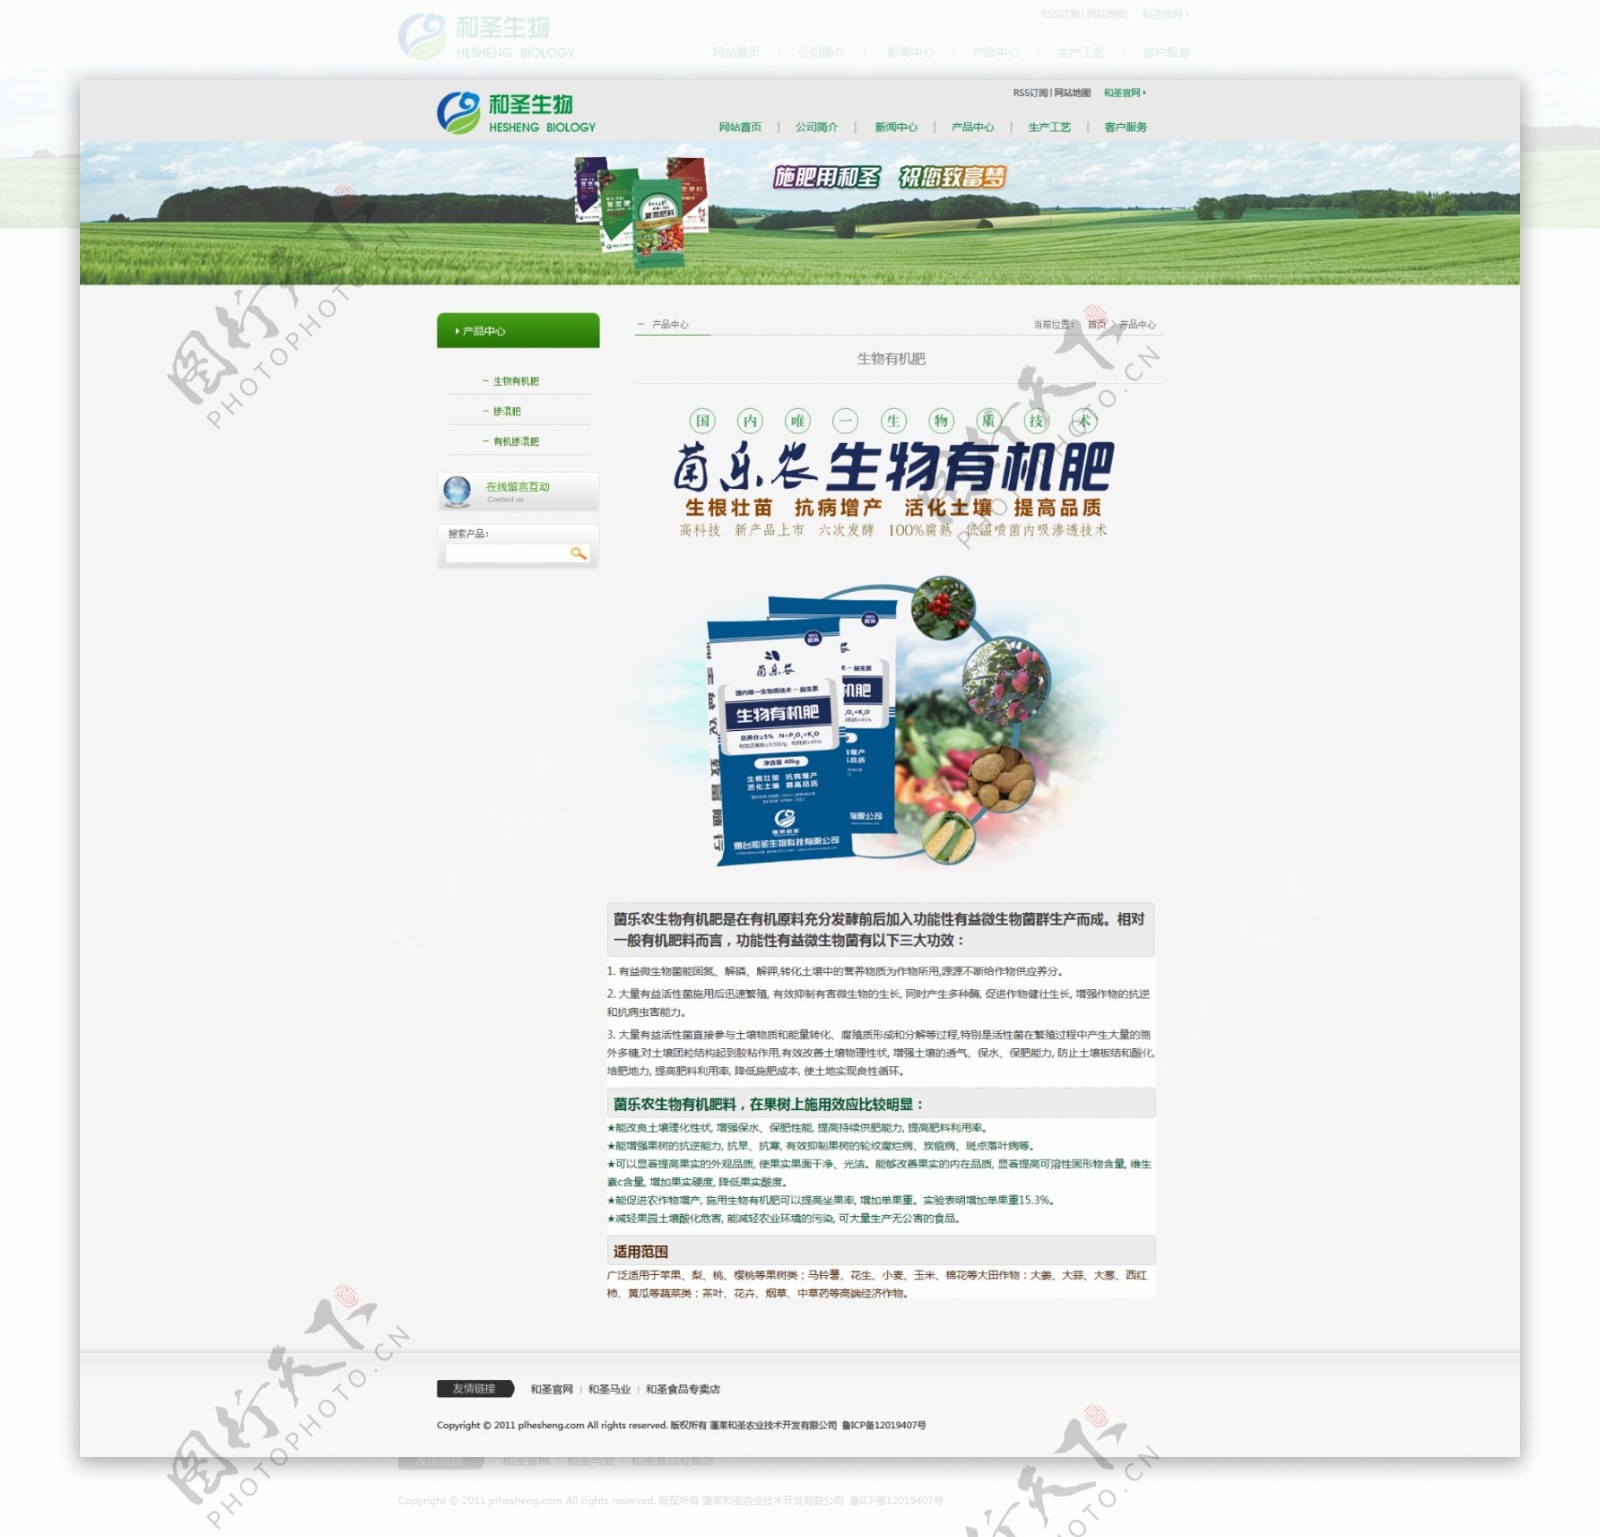 肥料网站产品详页图片